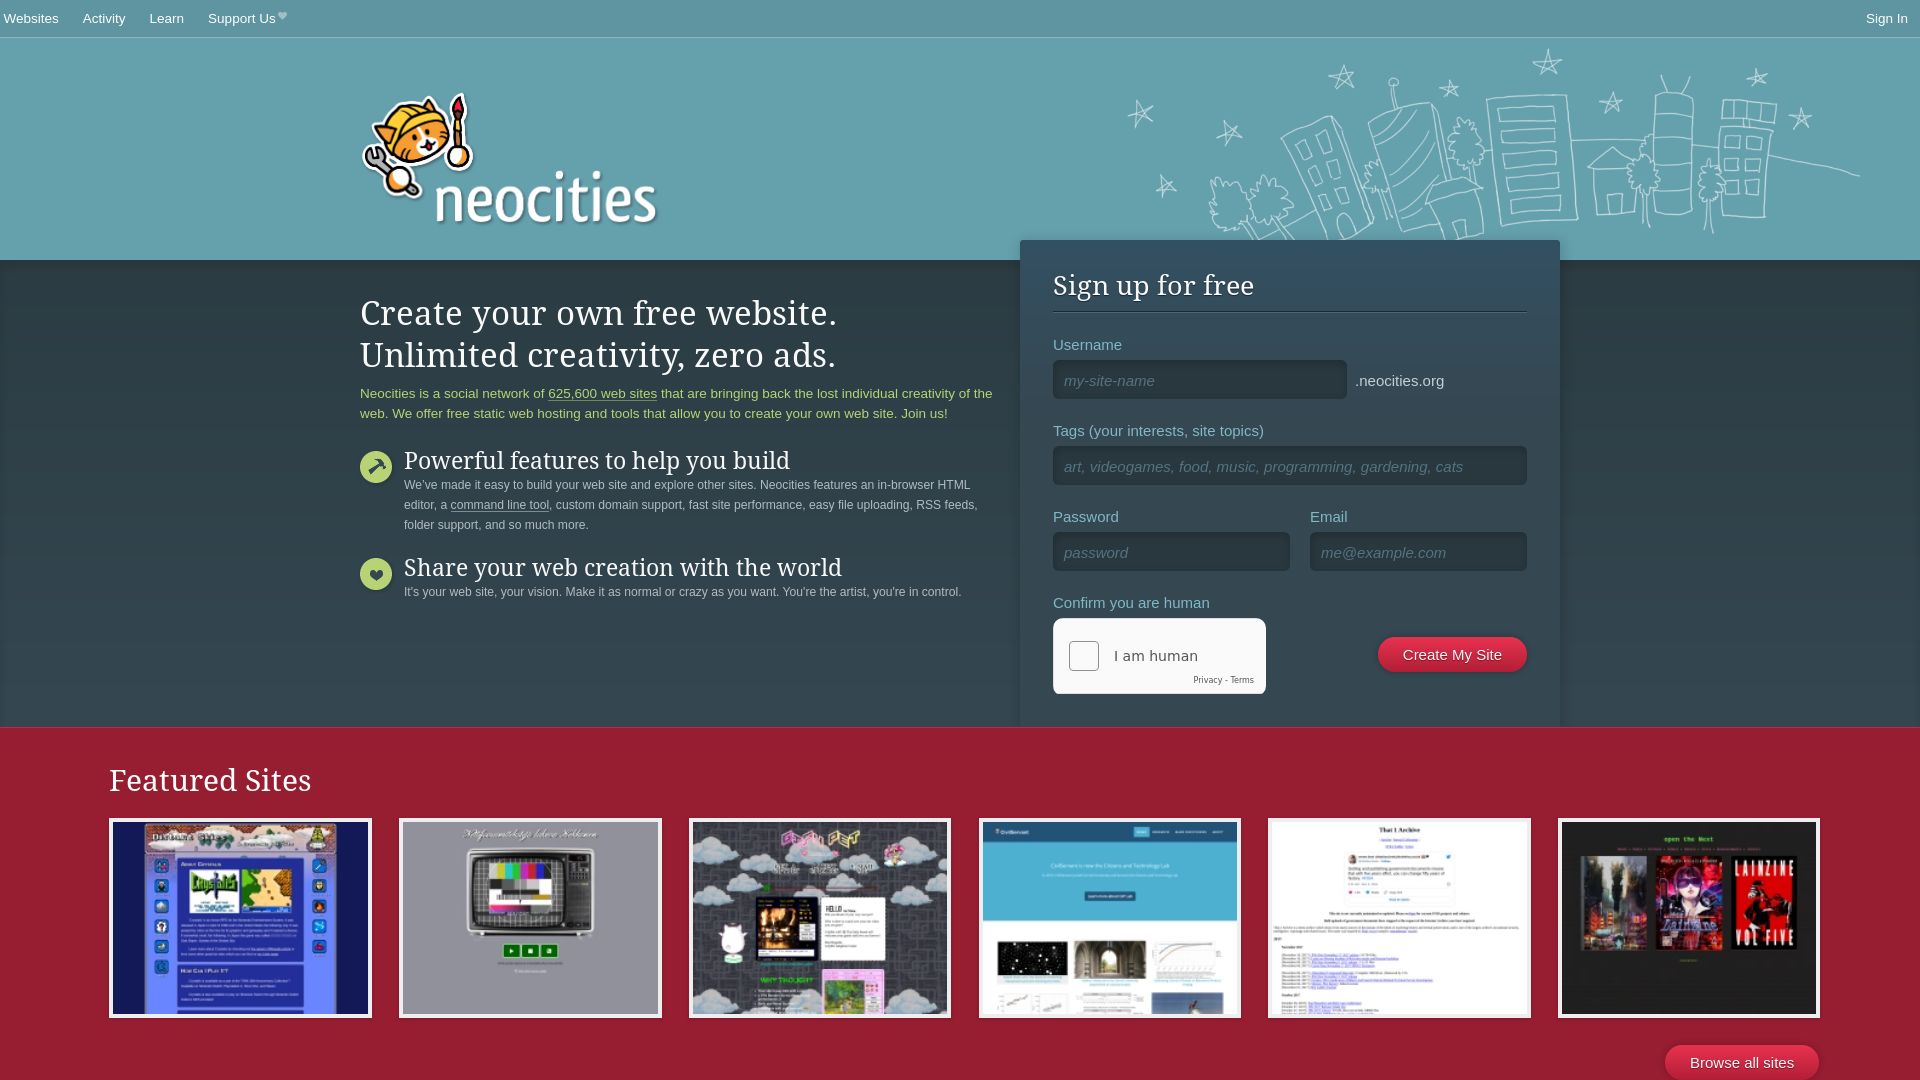 Website status neocities.org is   ONLINE